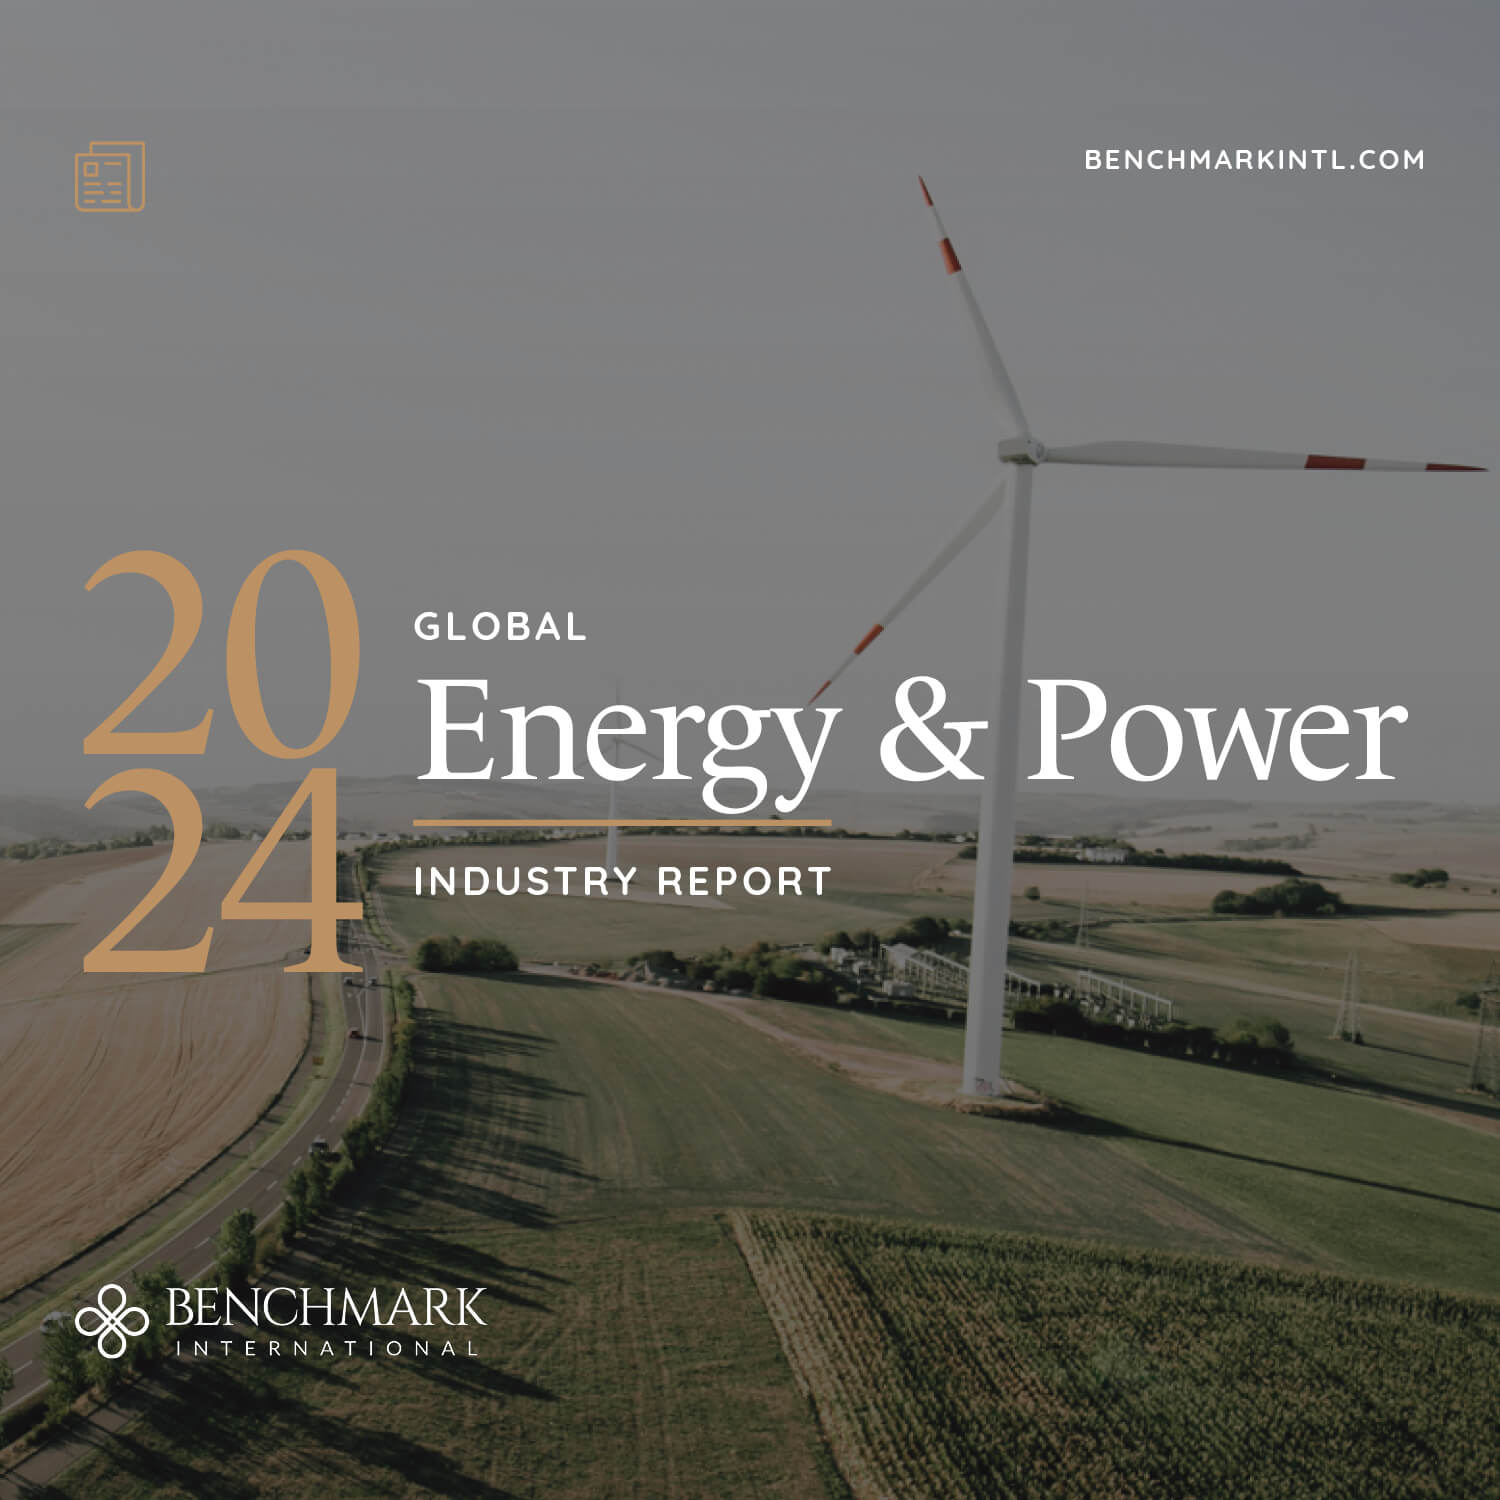 MRKTG_Social_Blog_Mobile_Industry_Report_Energy_&_Power